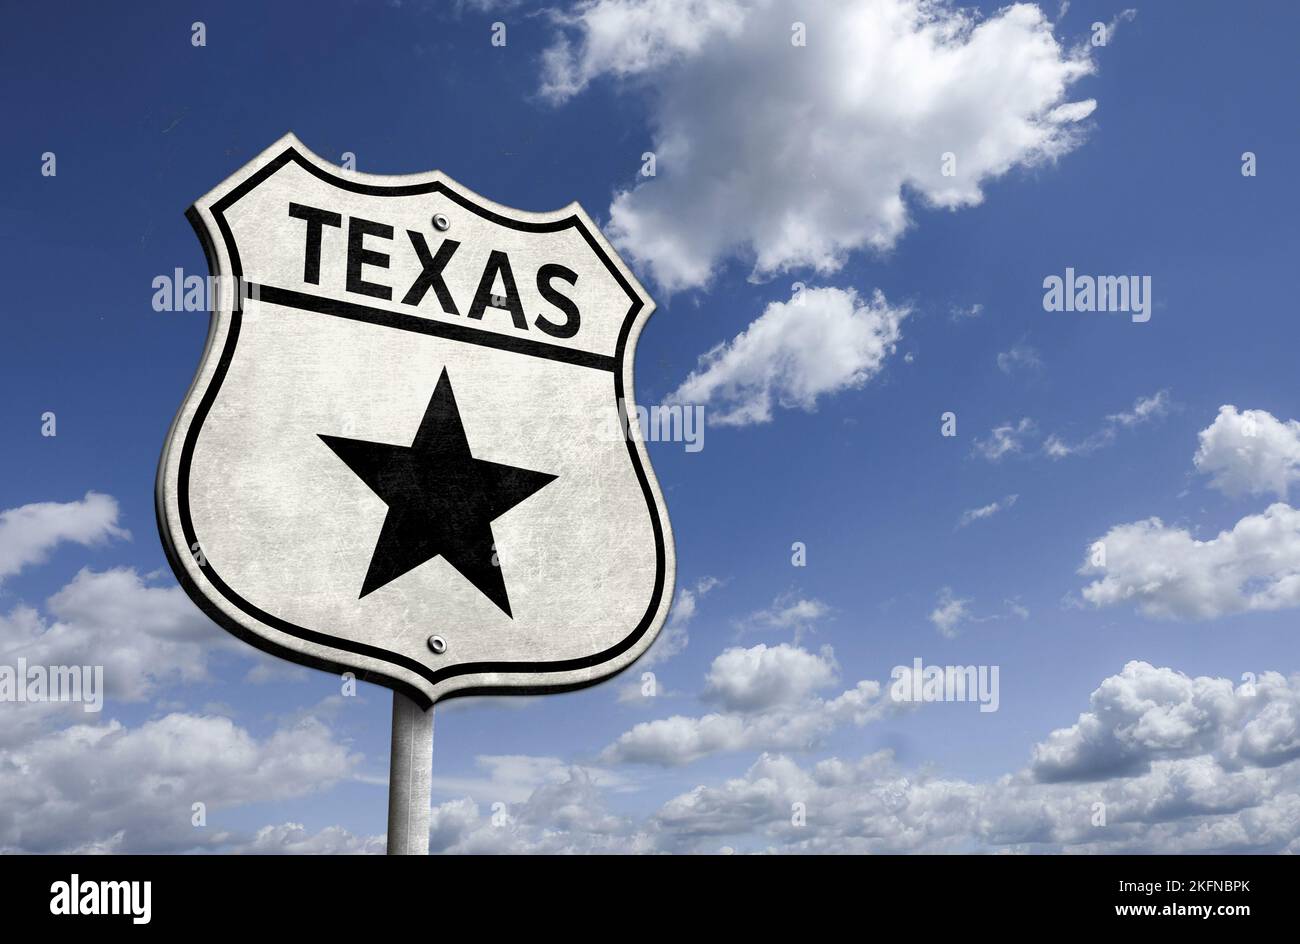 Texas - der einstöckige Star-Staat - Verkehrsschild Stockfoto